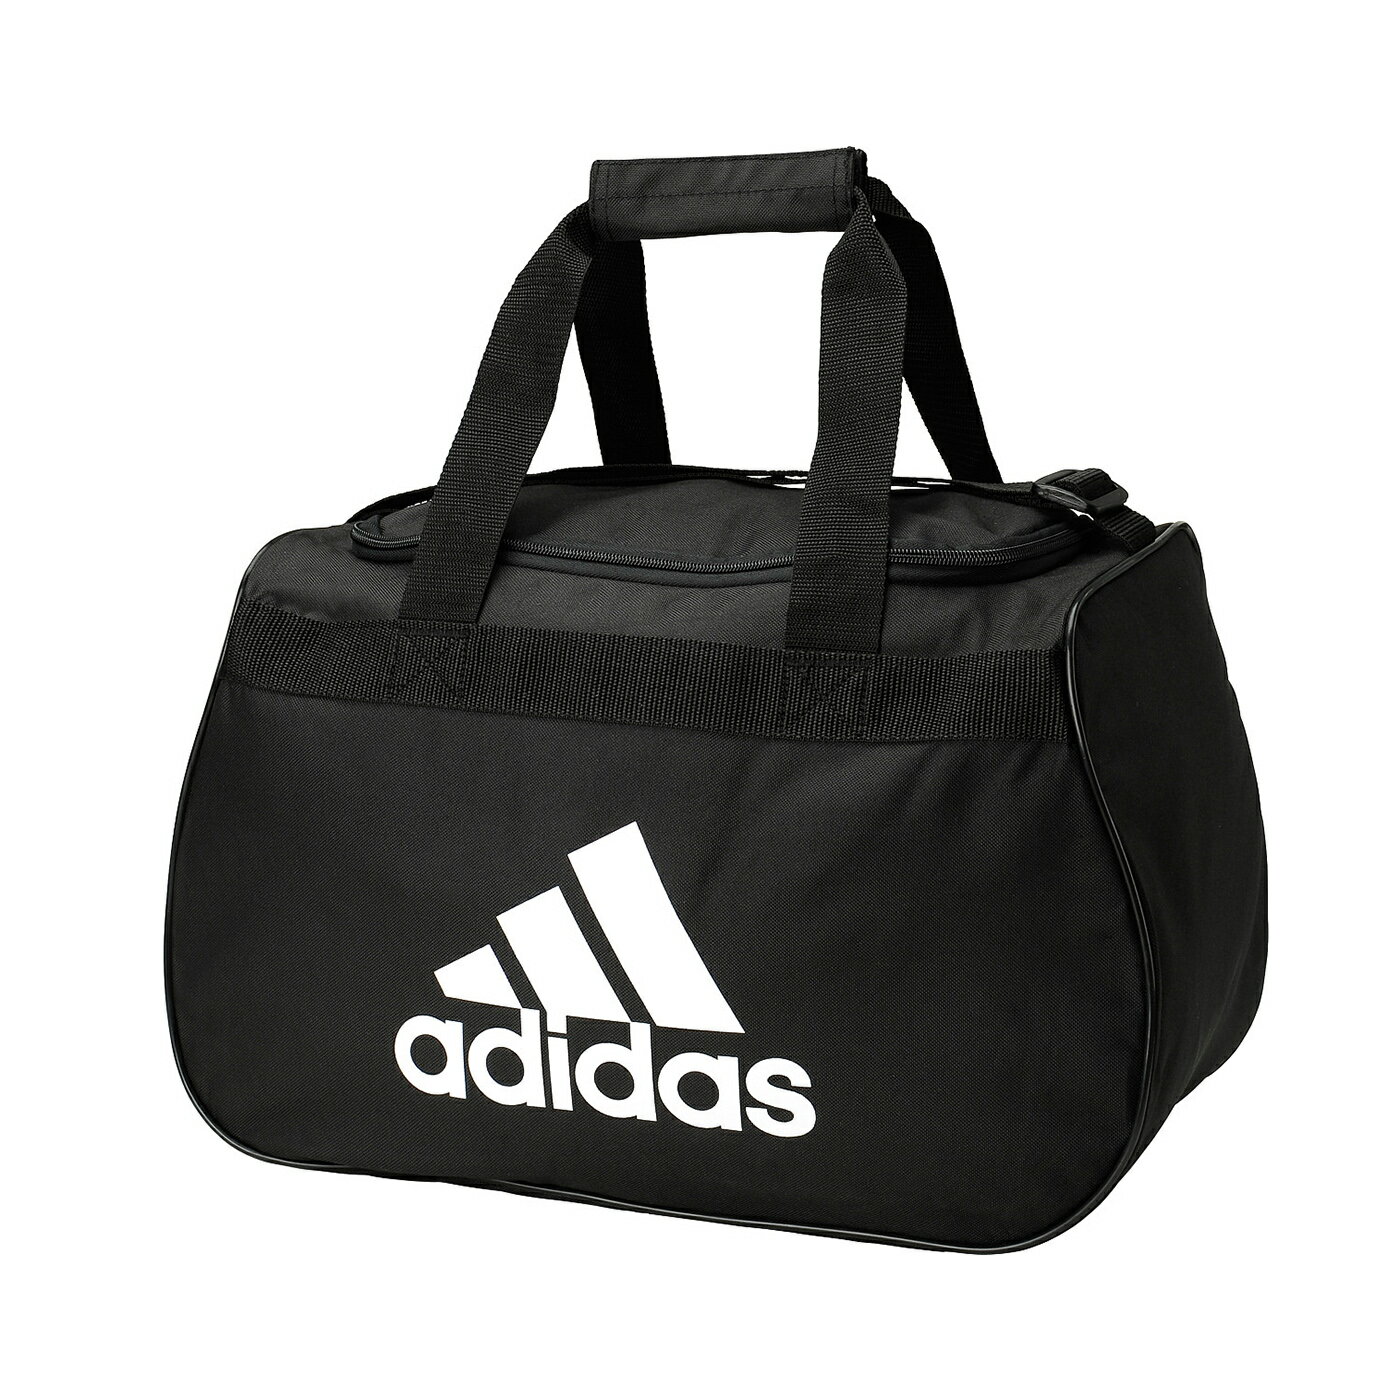 美國百分百【全新真品】Adidas 旅行袋 愛迪達 大容量 運動 行李 手提 肩背 側背包 男包 女包 黑色 A292